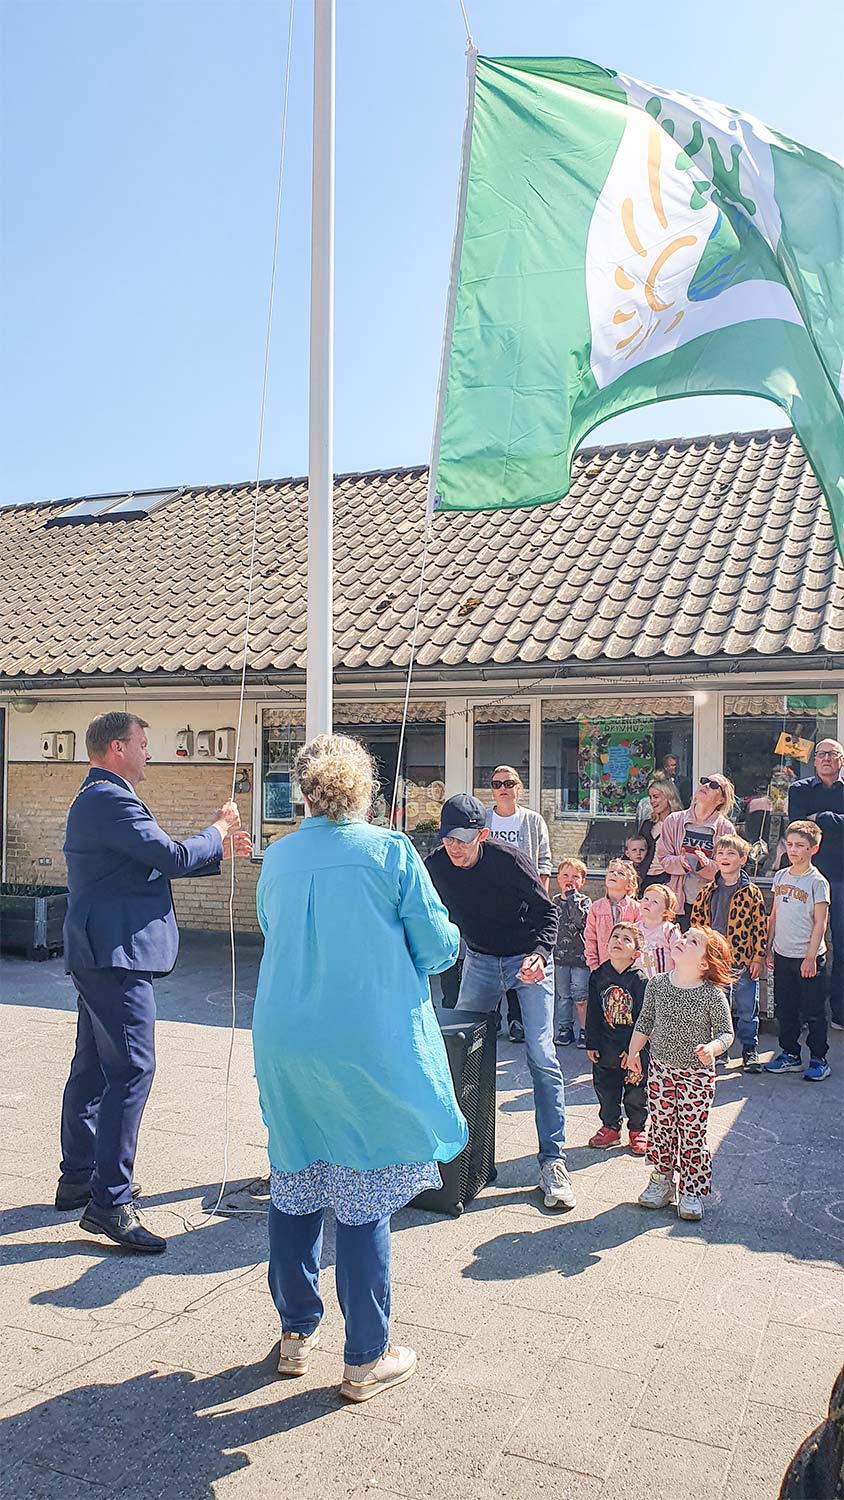 Borgmesteren hejser det grønne flag. Foto: CL.